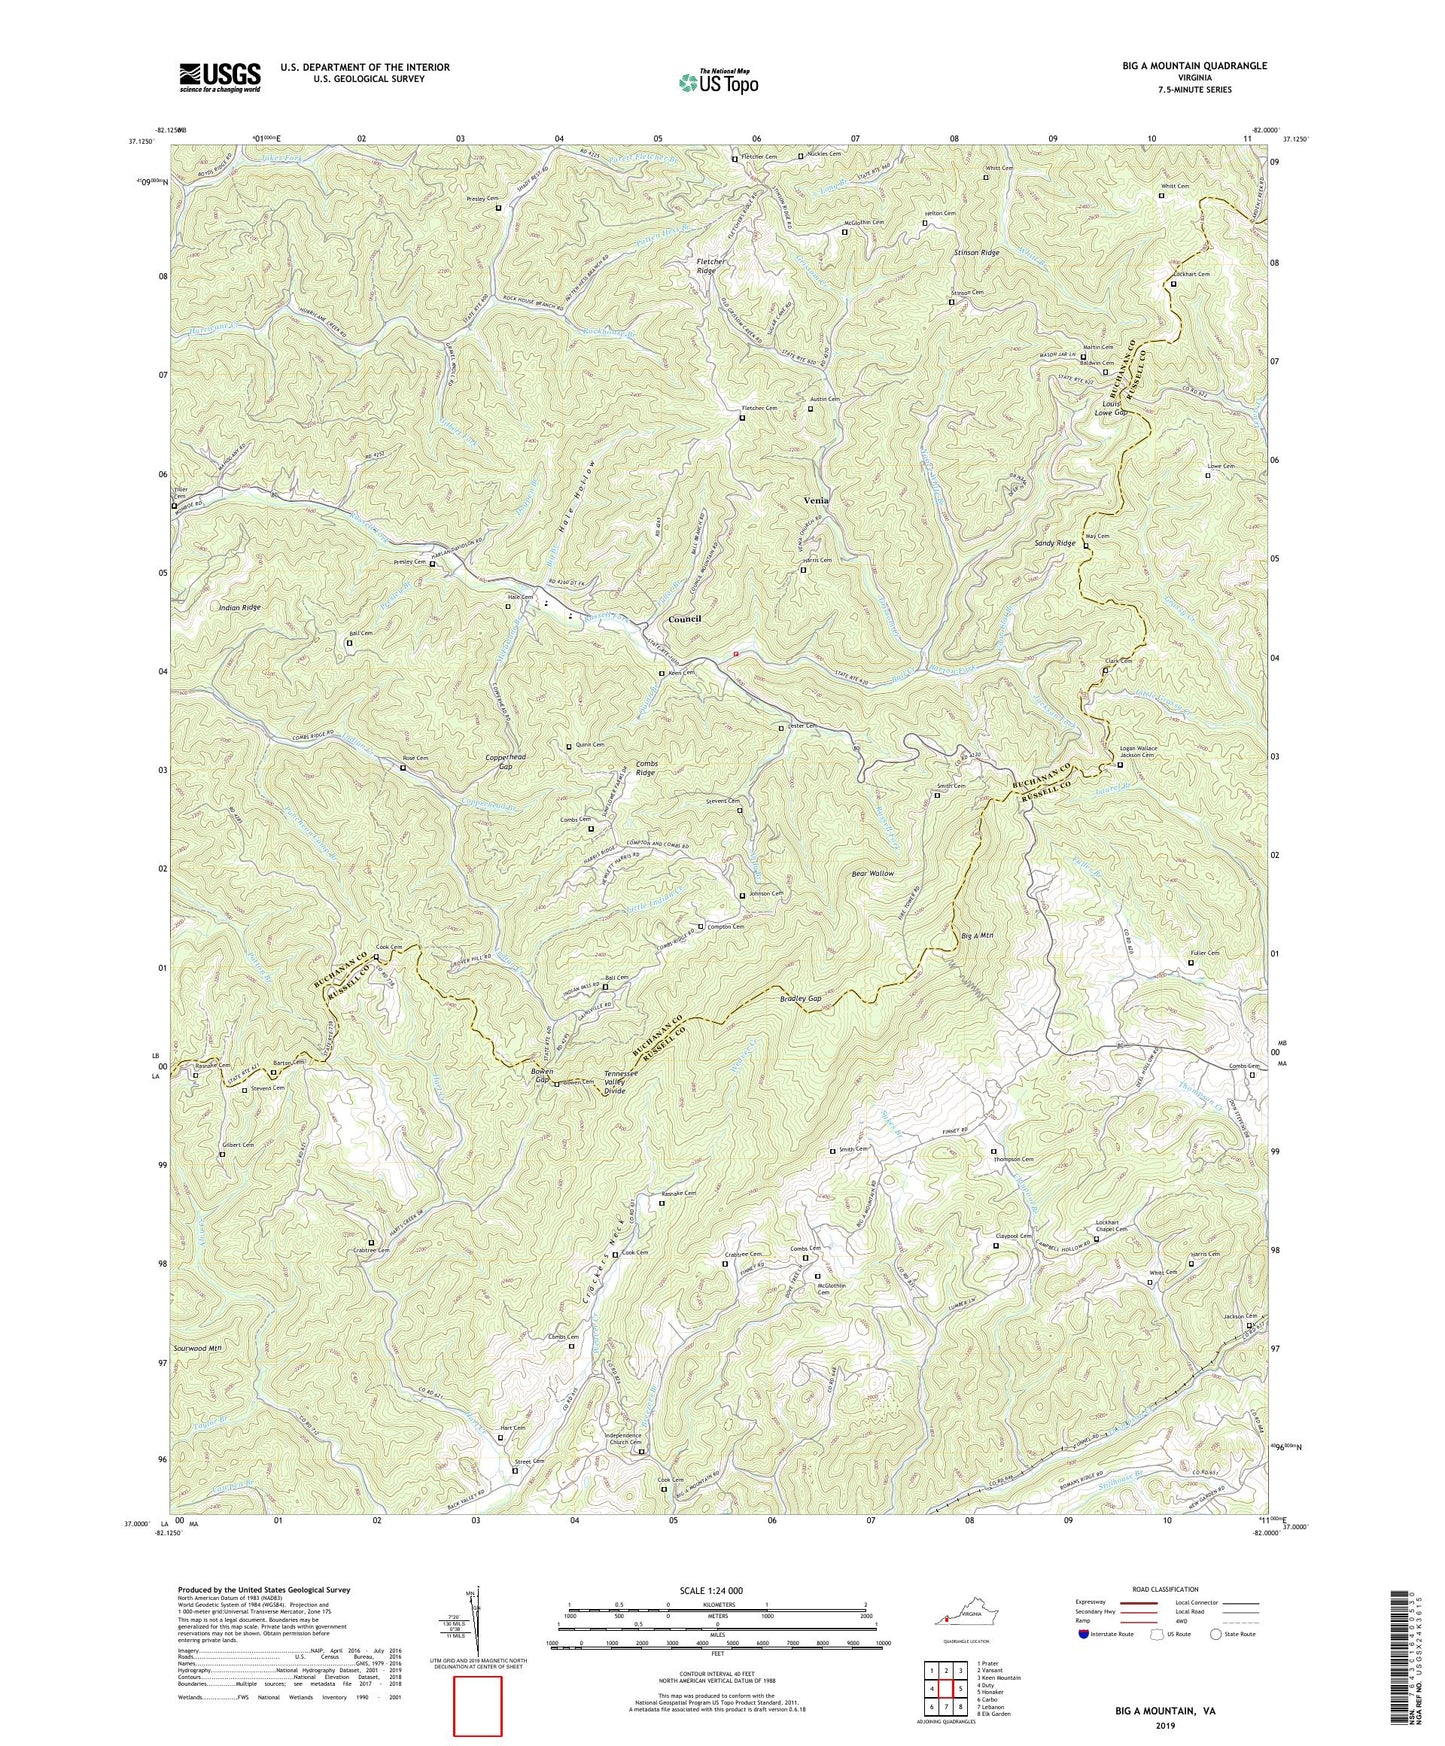 Big A Mountain Virginia US Topo Map Image